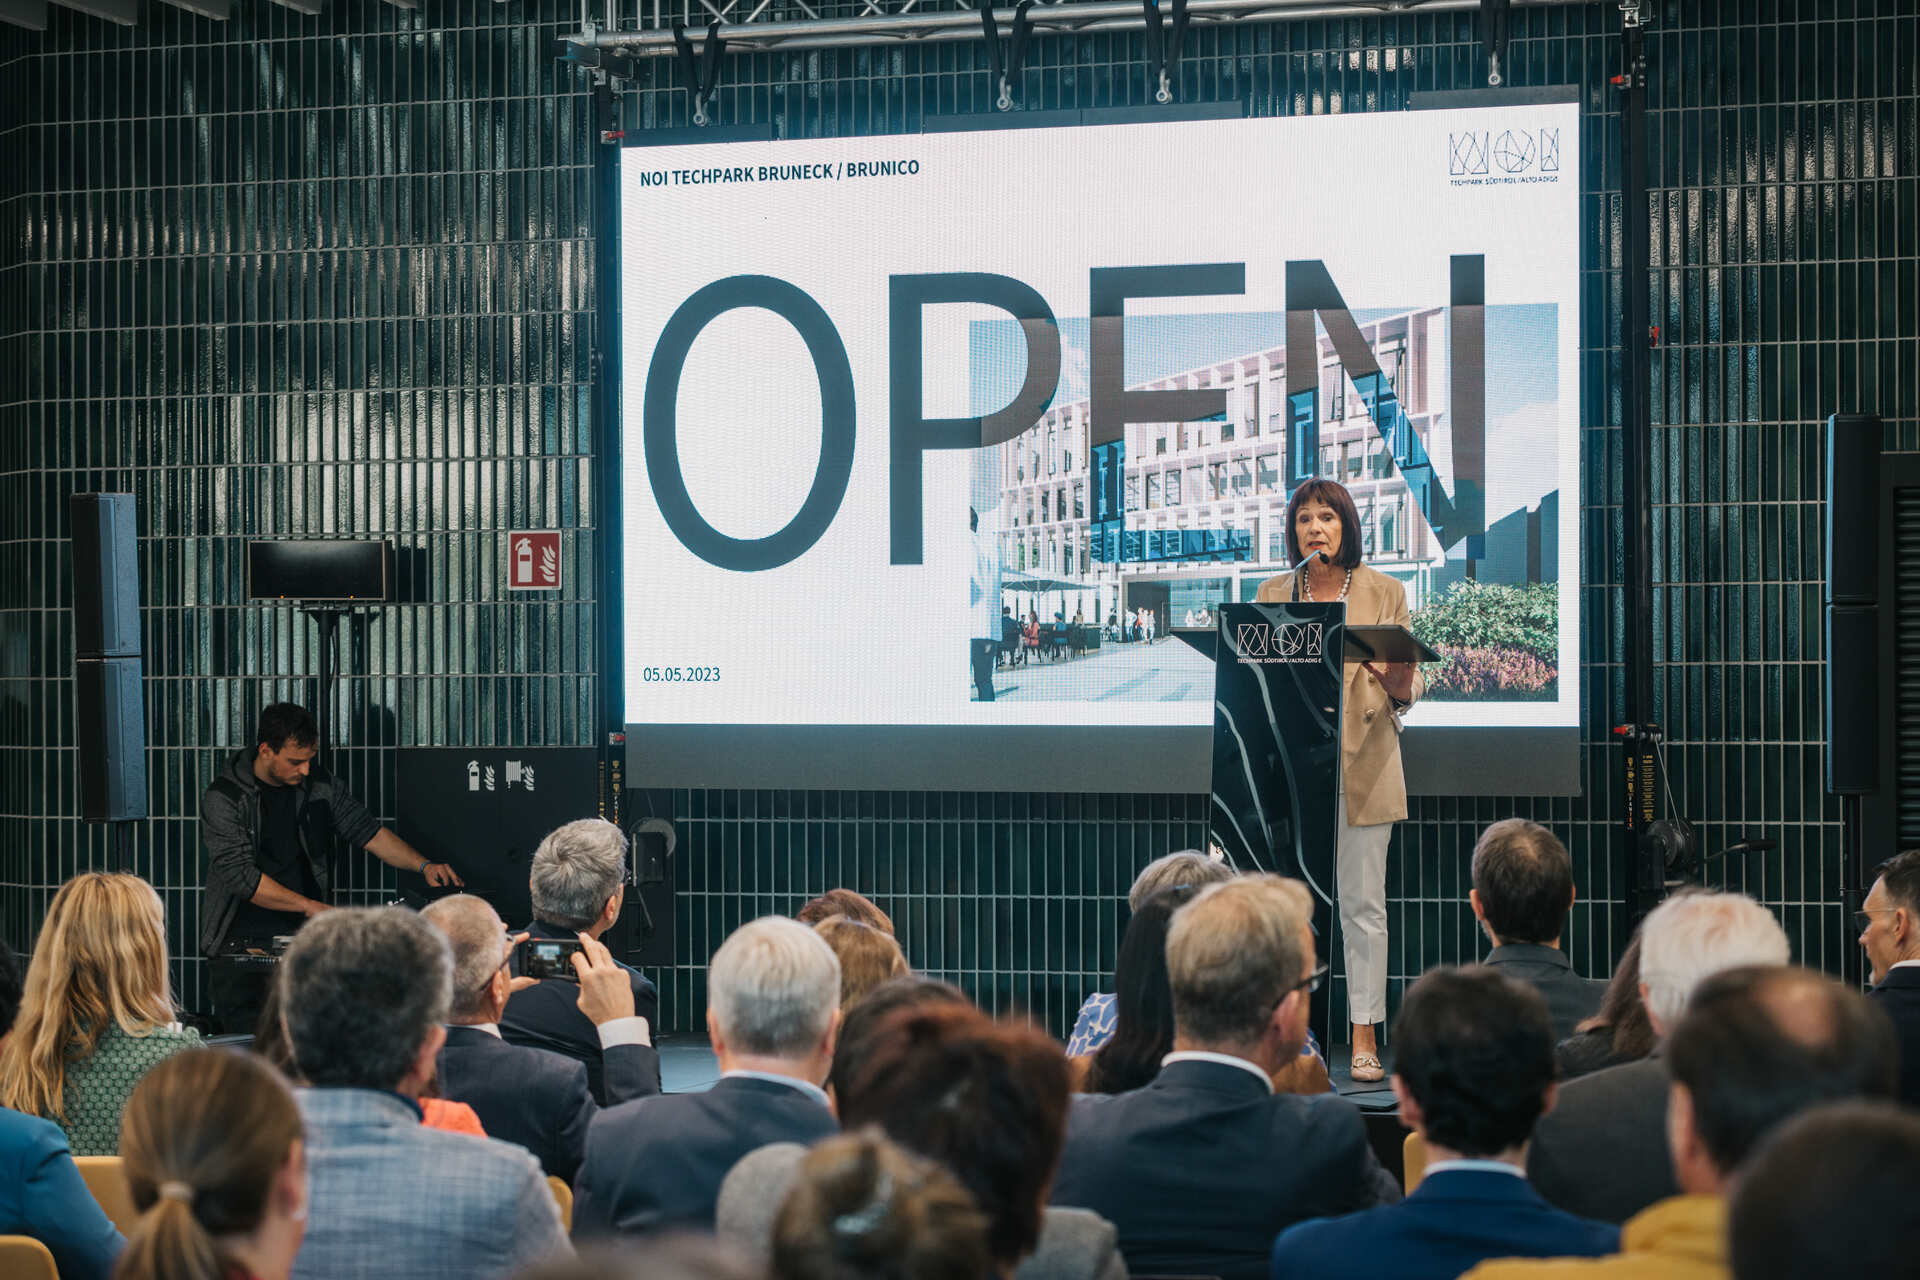 Val Pusteria: Discursul Helga Thaler, președintele NOI Techpark, la inaugurarea centrului pentru mobilitatea durabilă a viitorului din Brunico, pe 5 mai 2023, în Tirolul de Sud